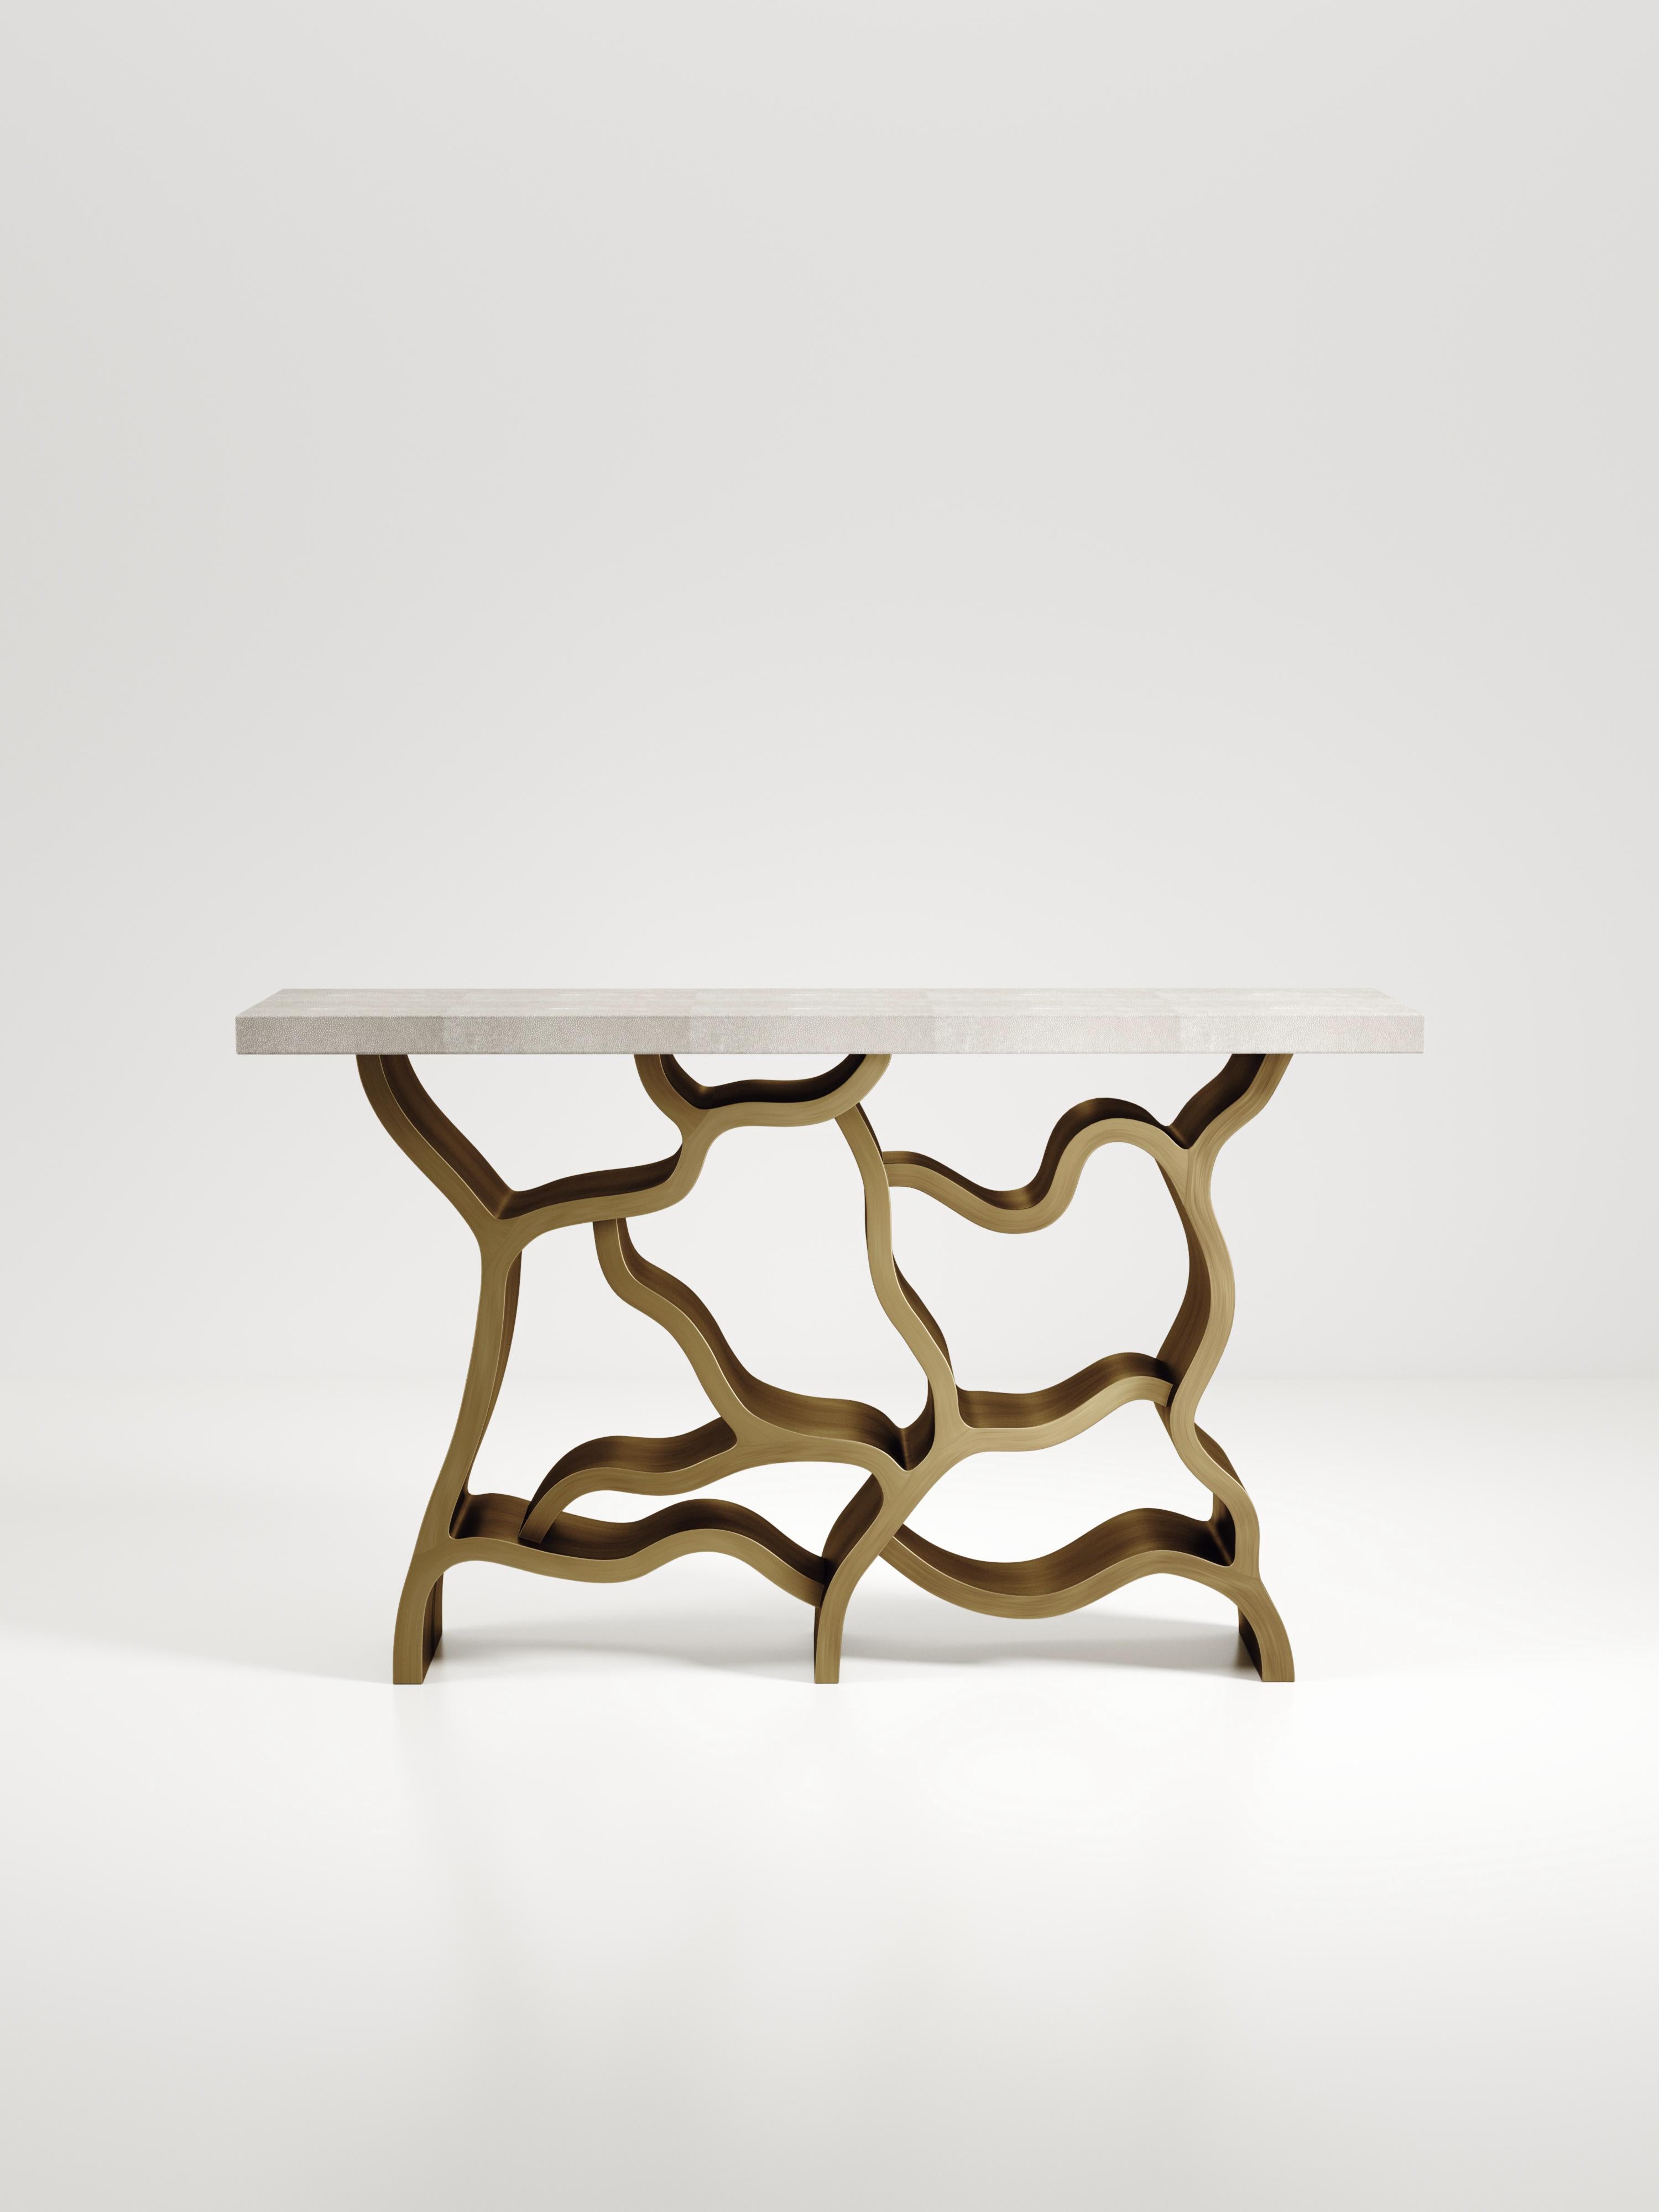 La table console Leaf de Kifu Paris est une pièce spectaculaire et organique. Le plateau rectangulaire incrusté de galuchat crème repose sur un socle en laiton bronze-patine qui évoque des branches entrelacées. Cette pièce a été conçue par Kifu